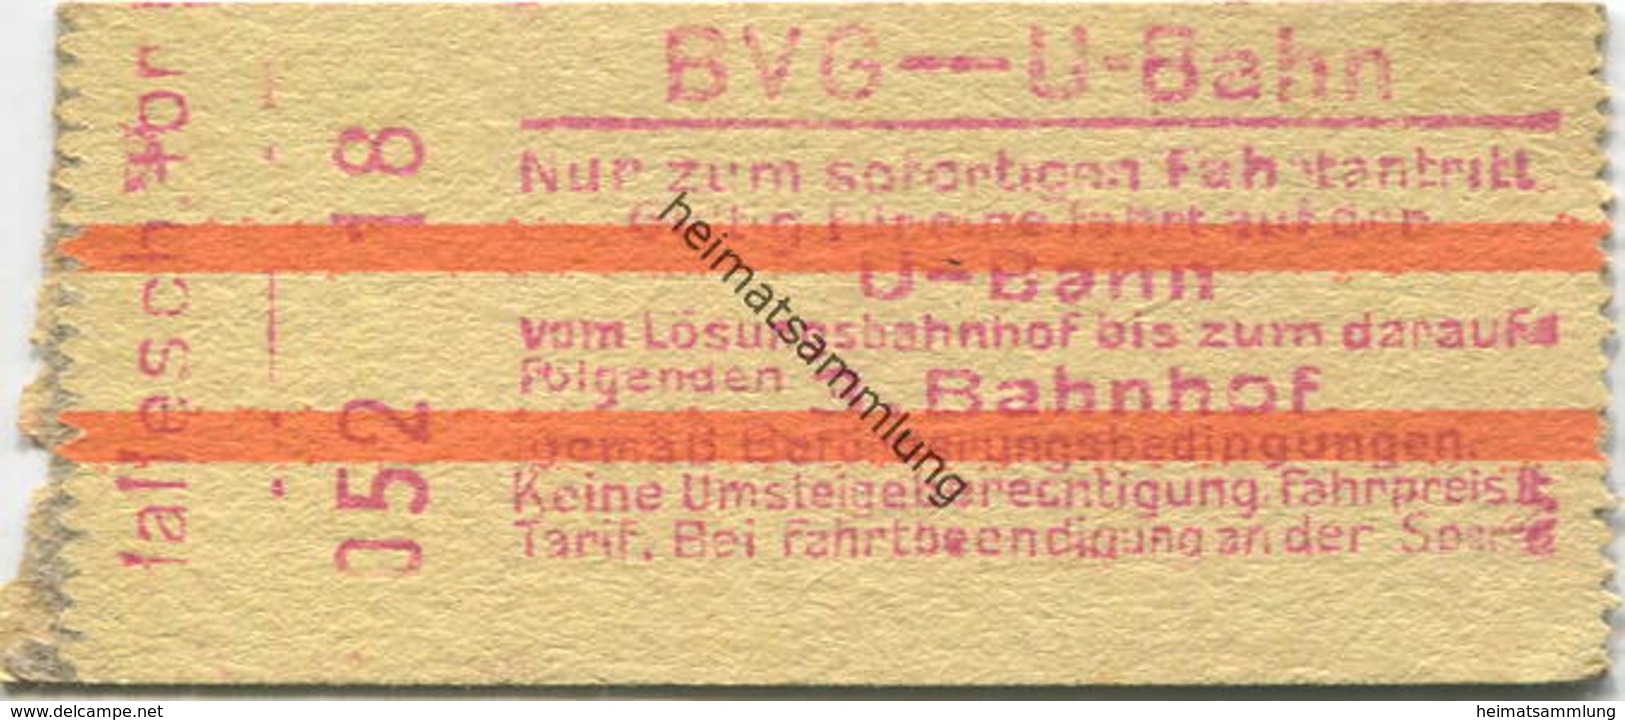 Deutschland - Berlin - BVG - U-Bahn - Fahrschein - Gültig Für Eine Fahrt Auf Der U-Bahn Bis Zum Darauffolgenden 3. Bahnh - Europe